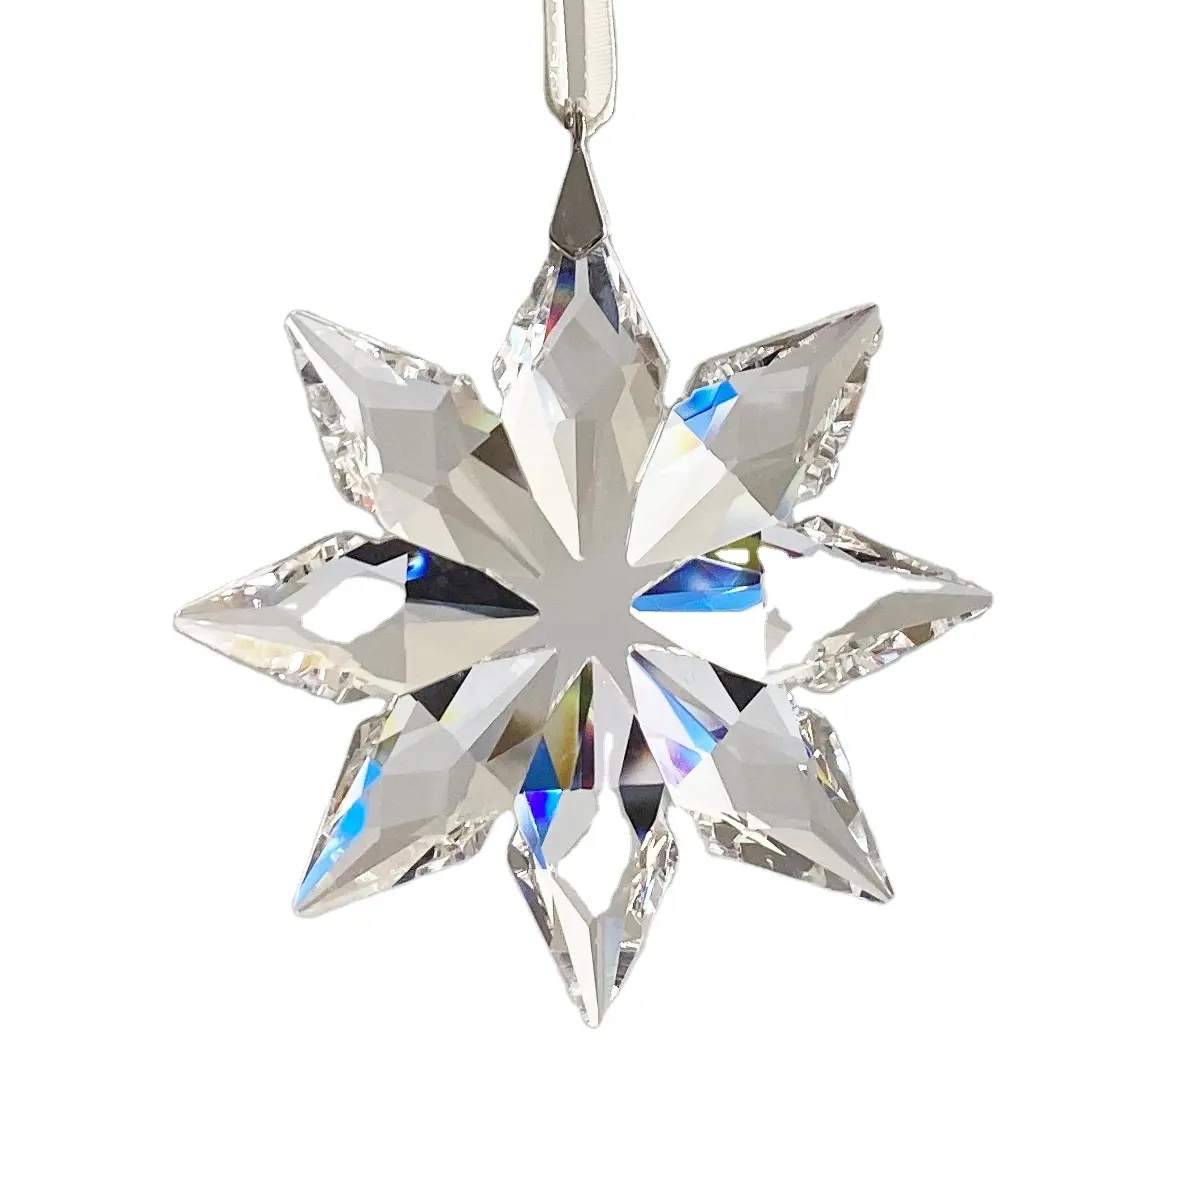 K9 cristal floco de neve decoração, ornamento de natal estrela cristal